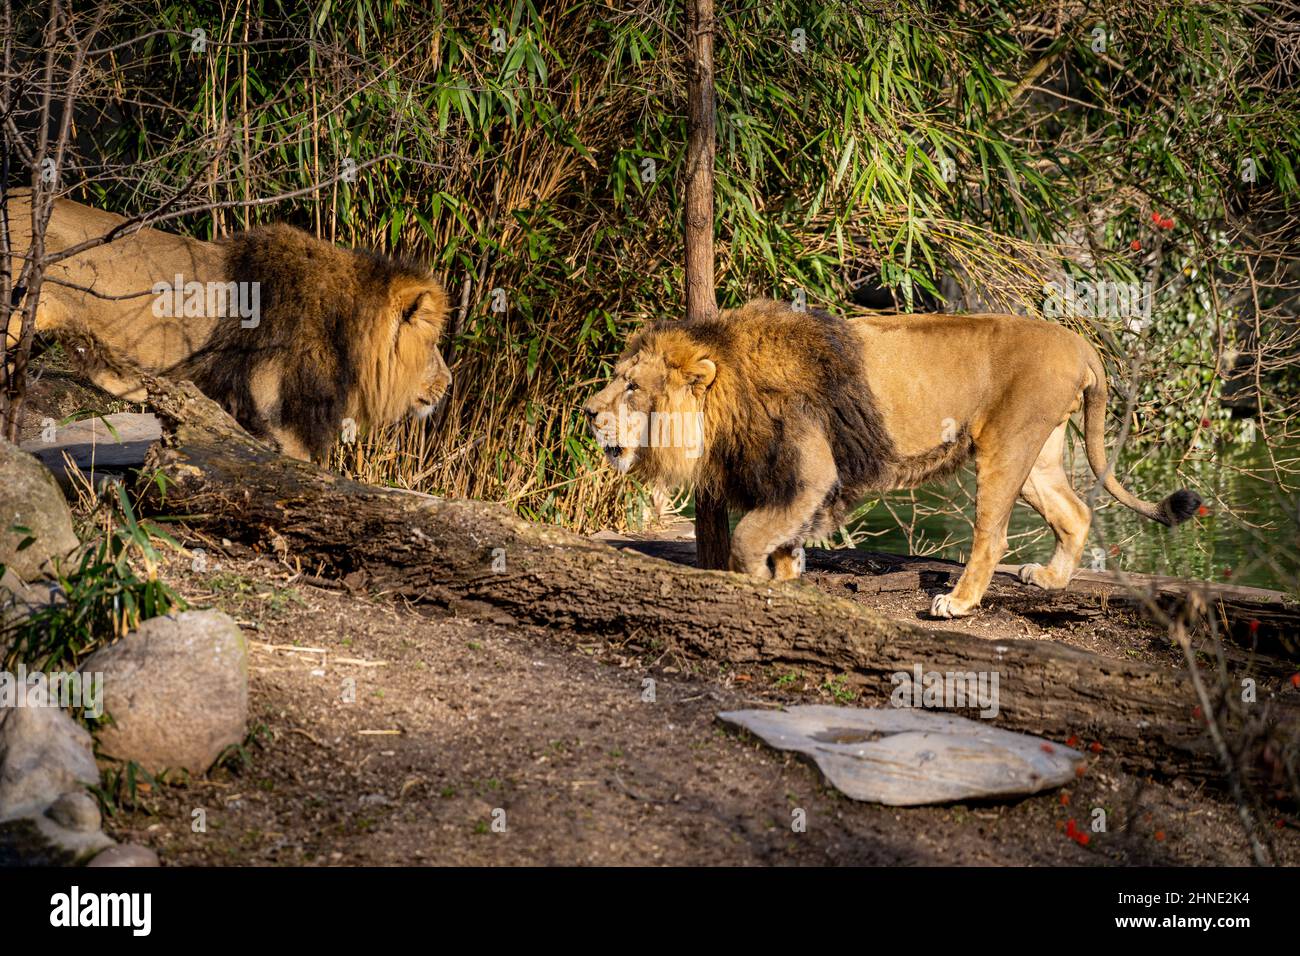 Deux lions se menacent l'un l'autre par beau temps dans la nature Banque D'Images